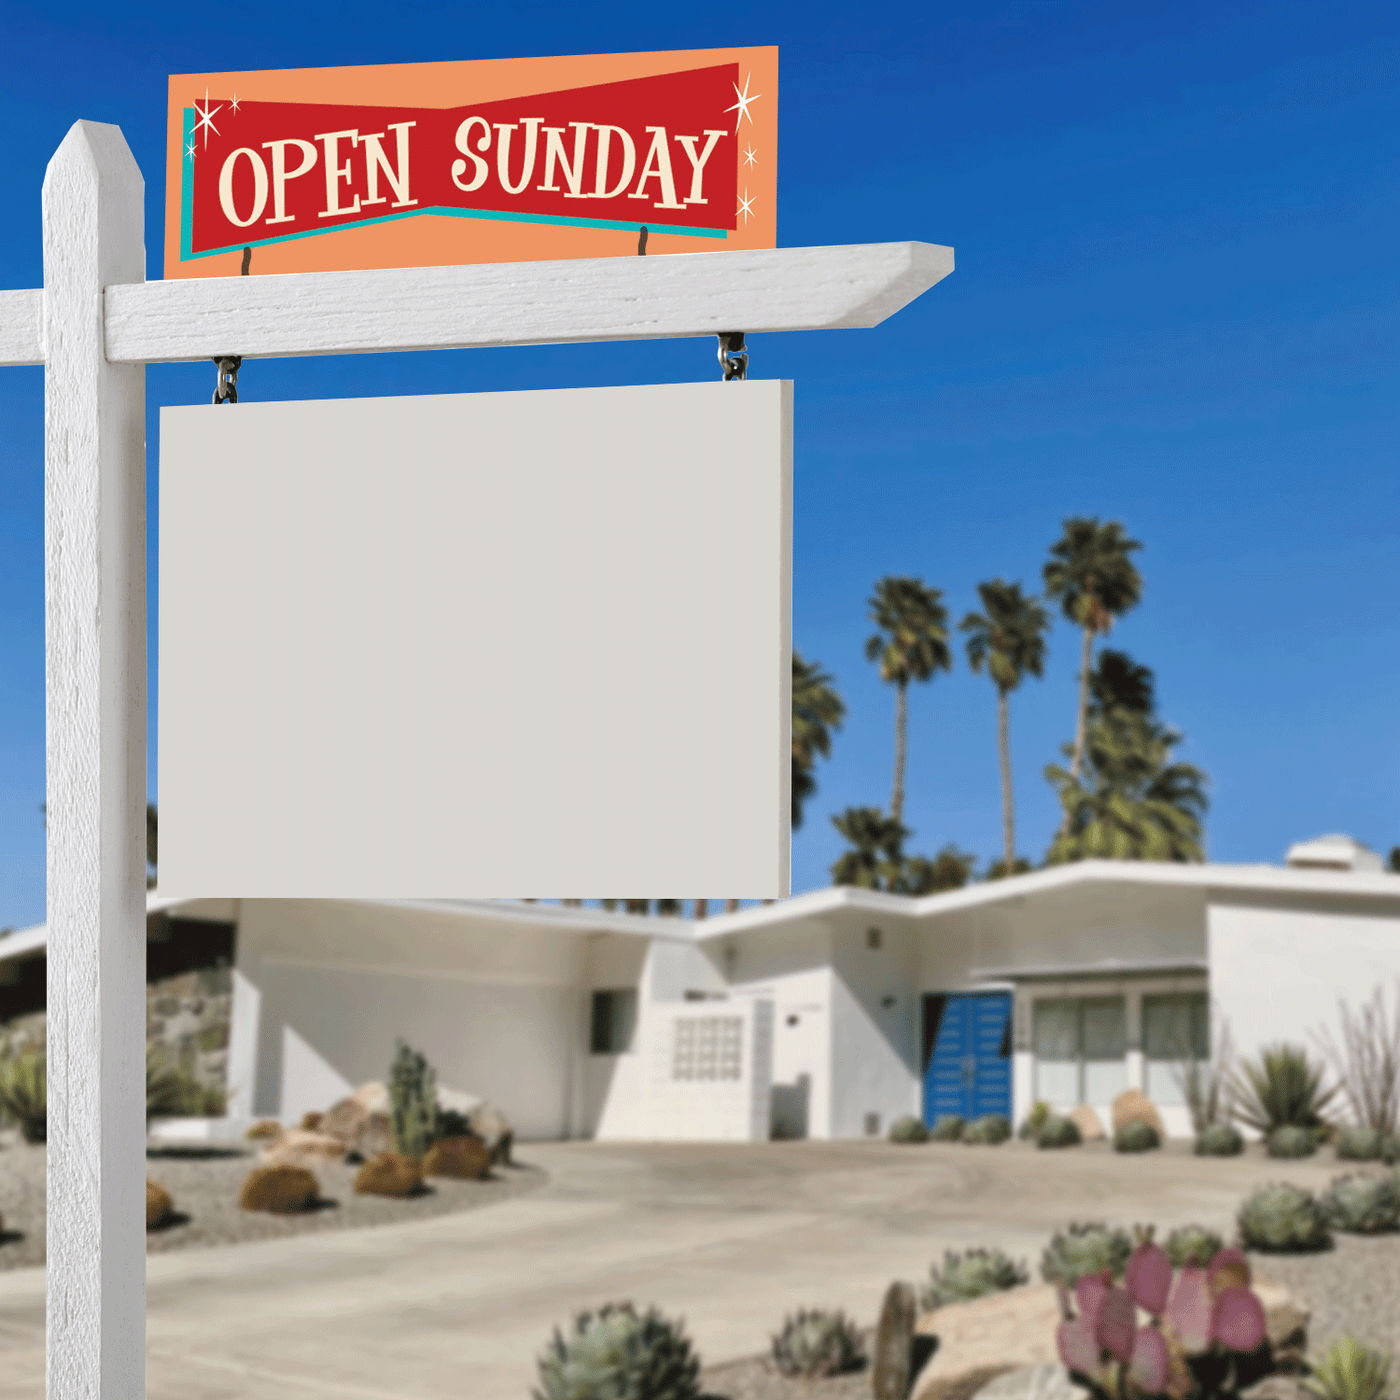 Open Sunday - Mid Century